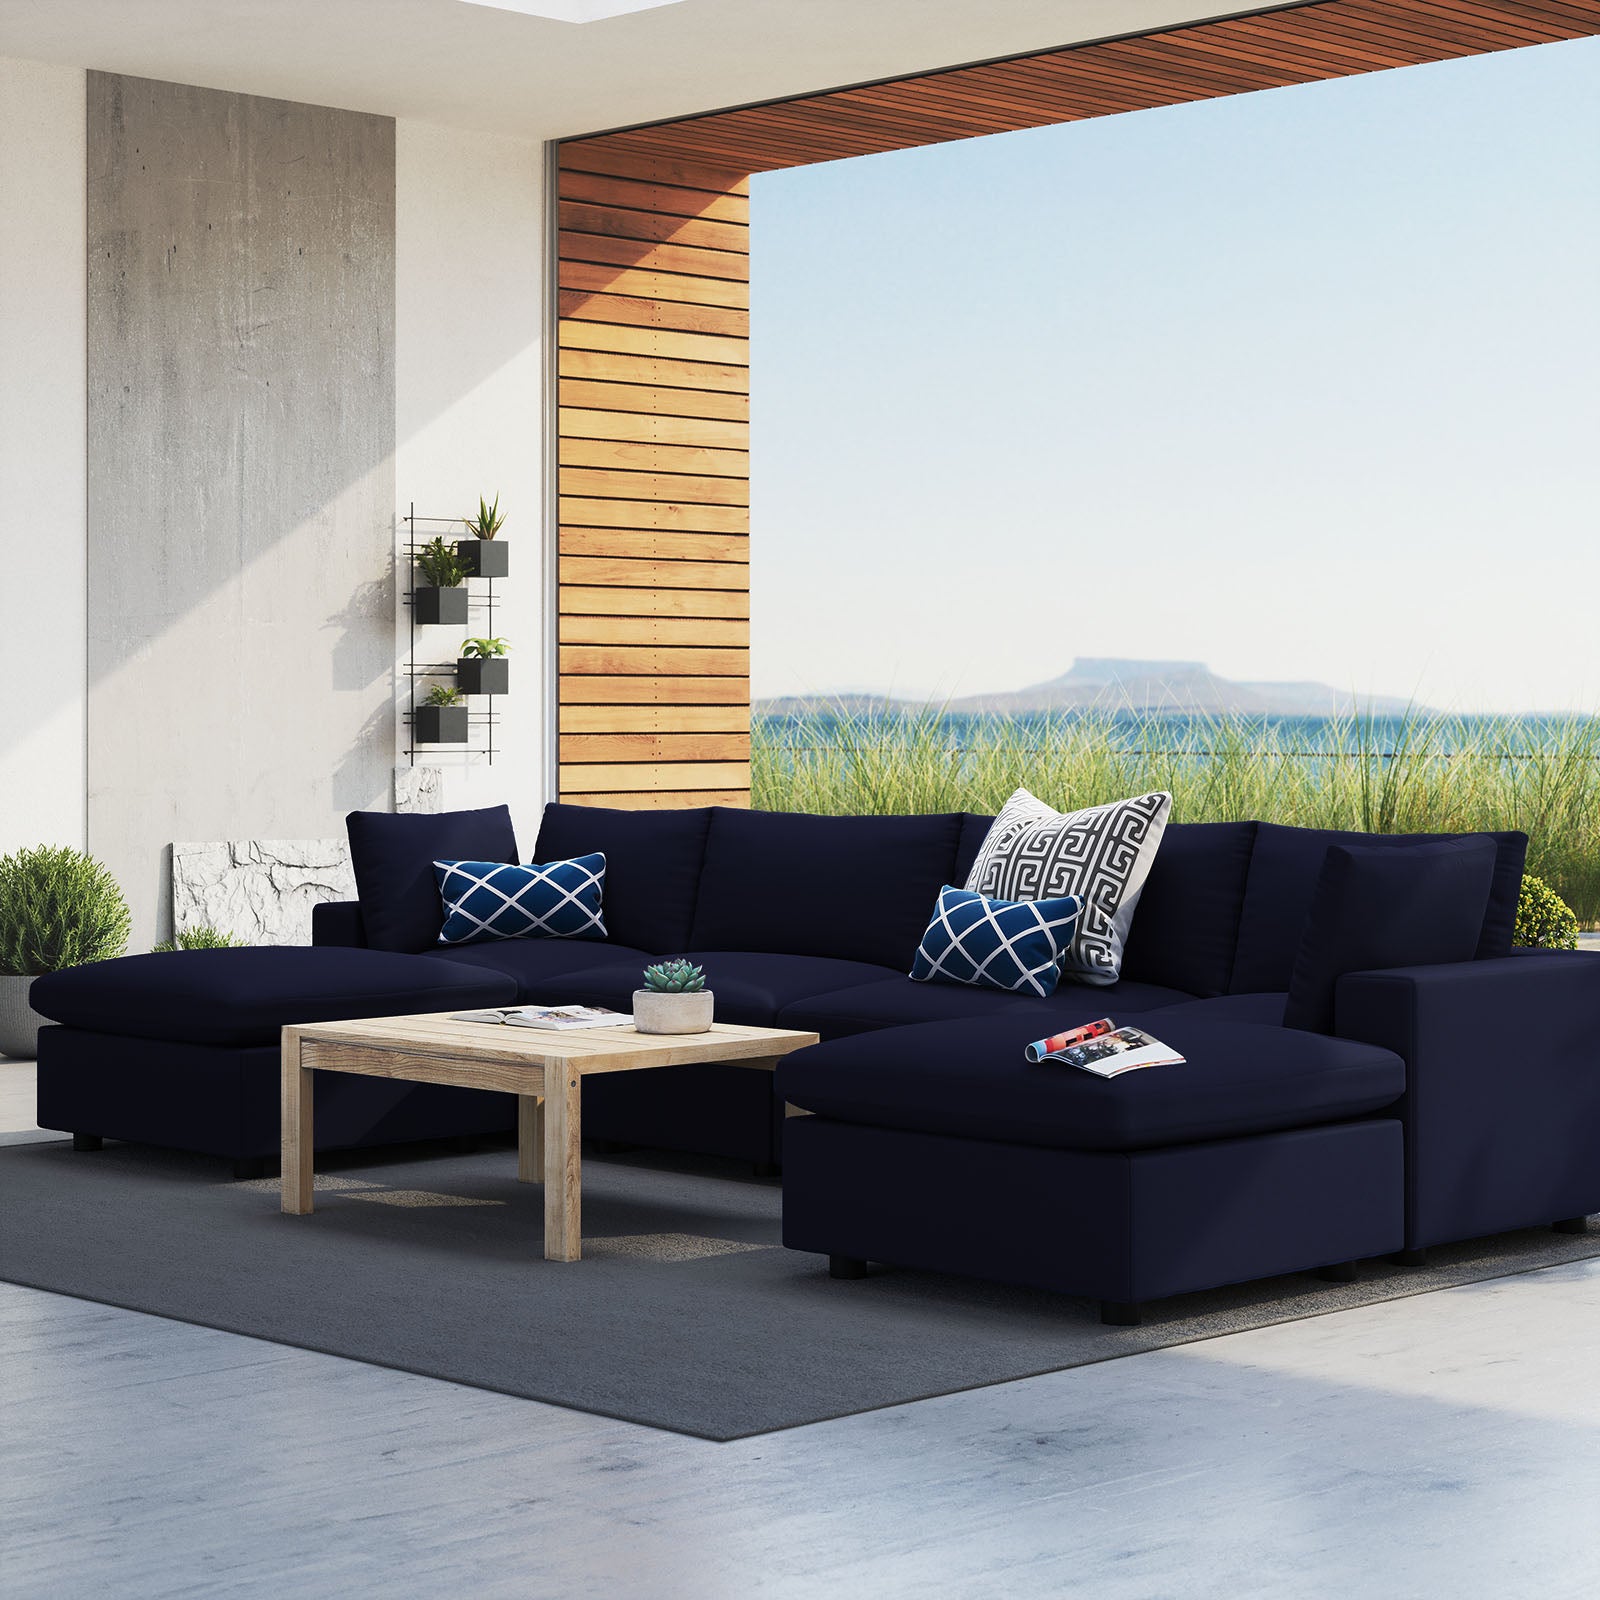 Modway Outdoor Sofas - Commix 6-Piece Sunbrella Outdoor Patio Sectional Sofa Navy